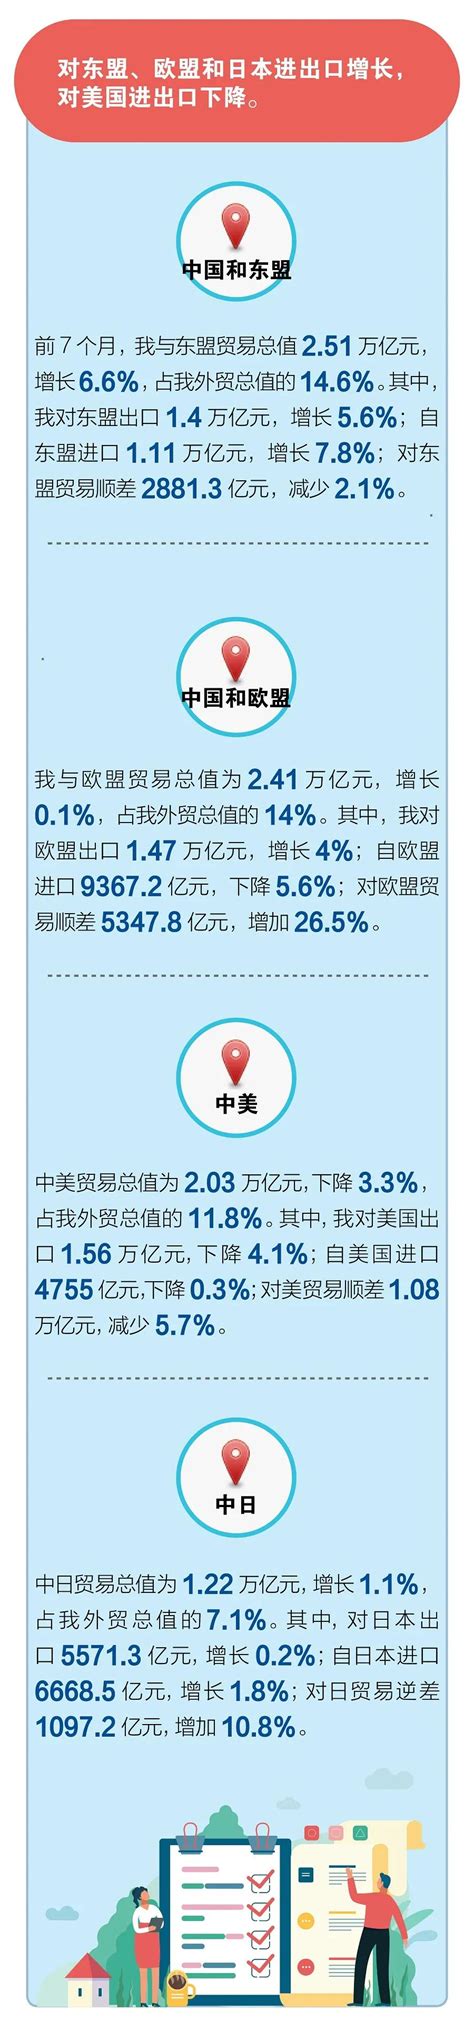 图解 | 7月份出口增长10.4%-出口外贸代理|上海外贸进出口公司